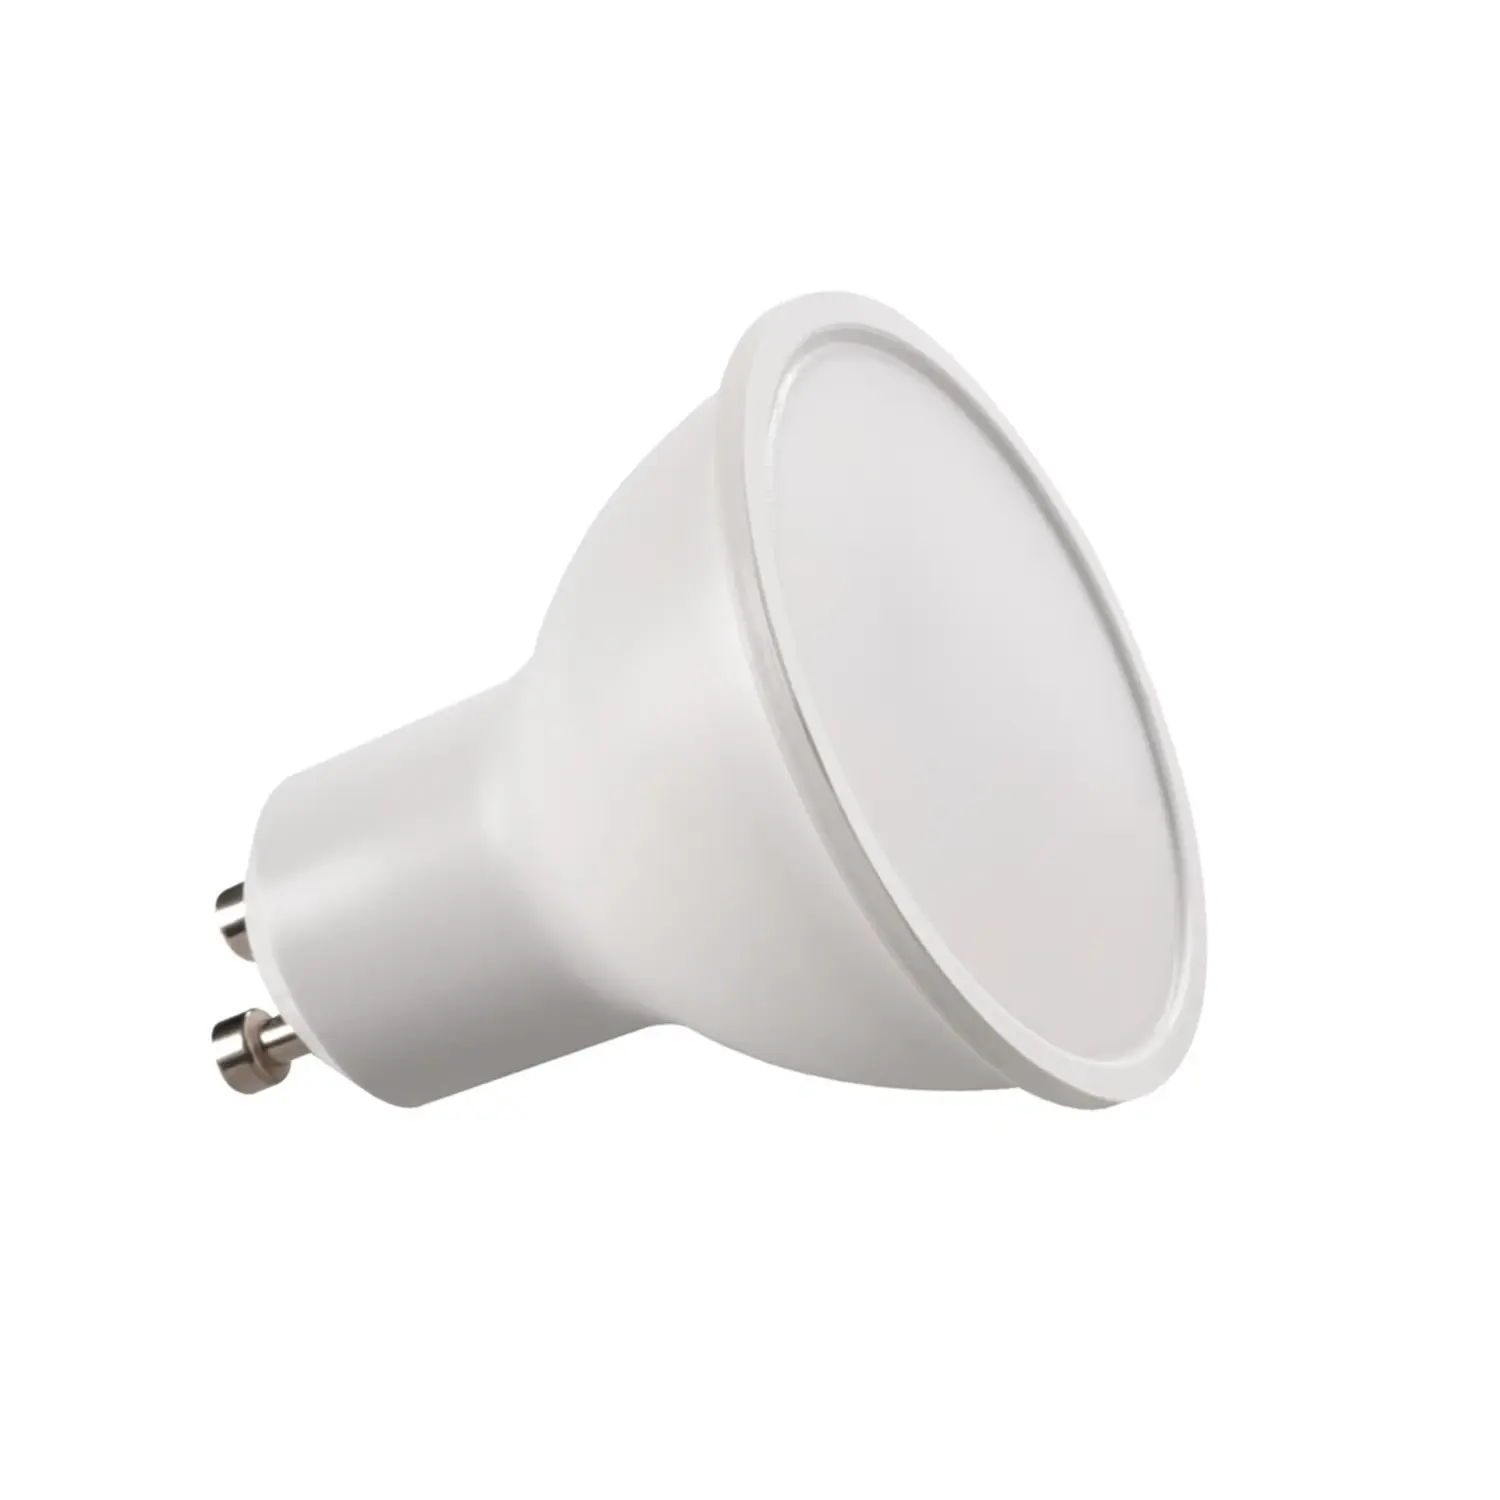 immagine del prodotto lampadina led lampada tomi faretti gu10 1,20 watt bianco freddo